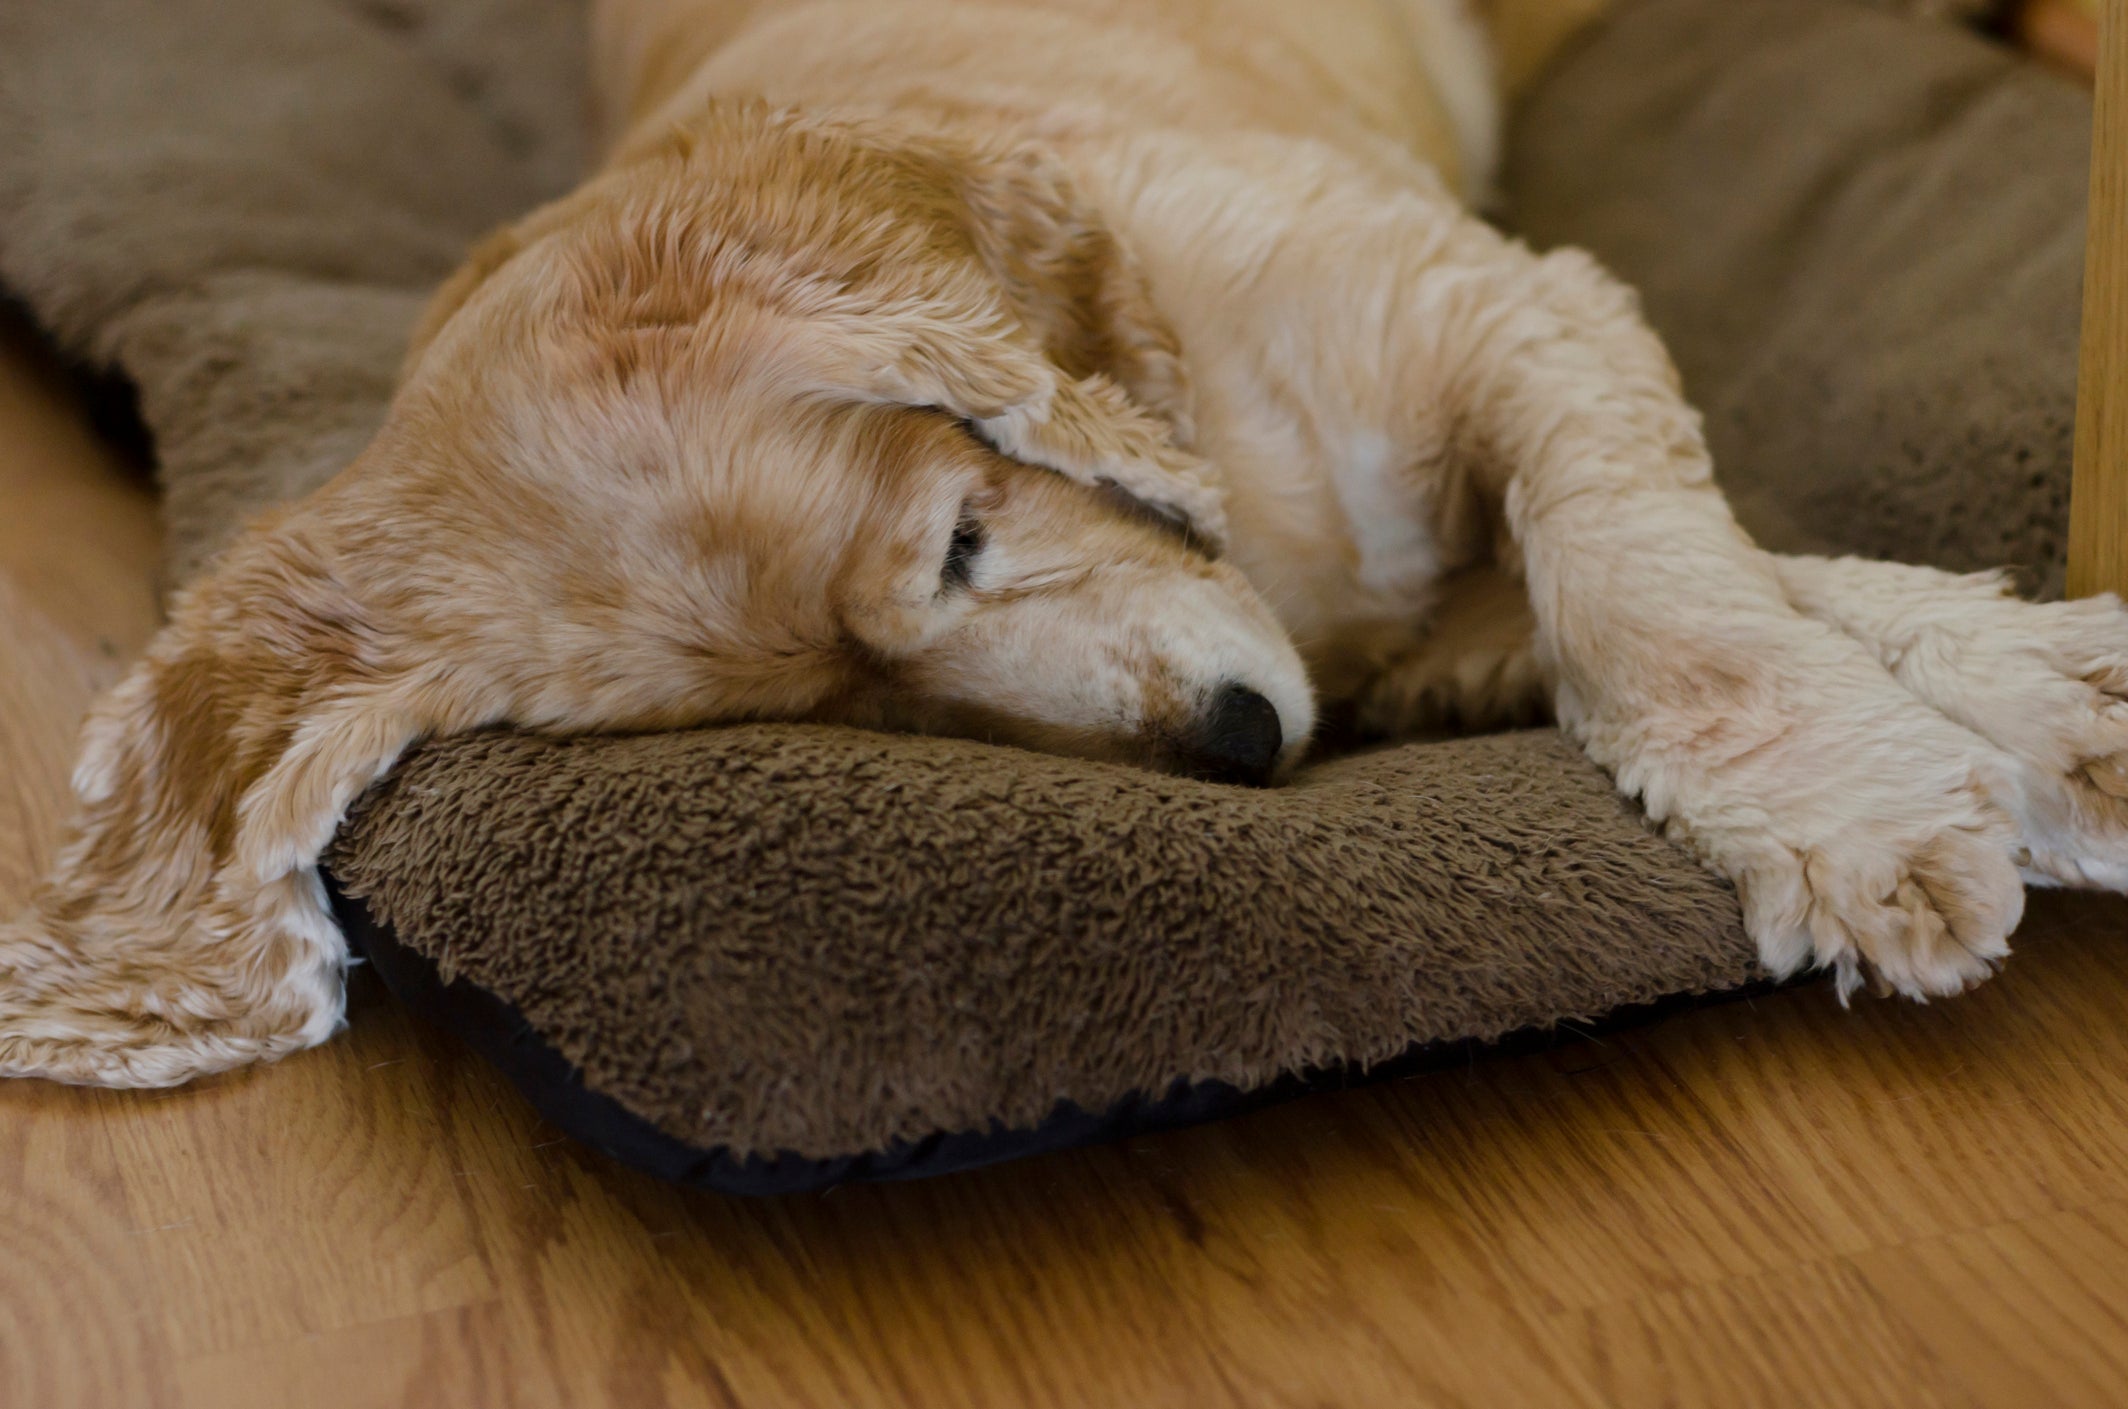 Cachorro deitado em colcha aparentando estar doente e/ou cansado